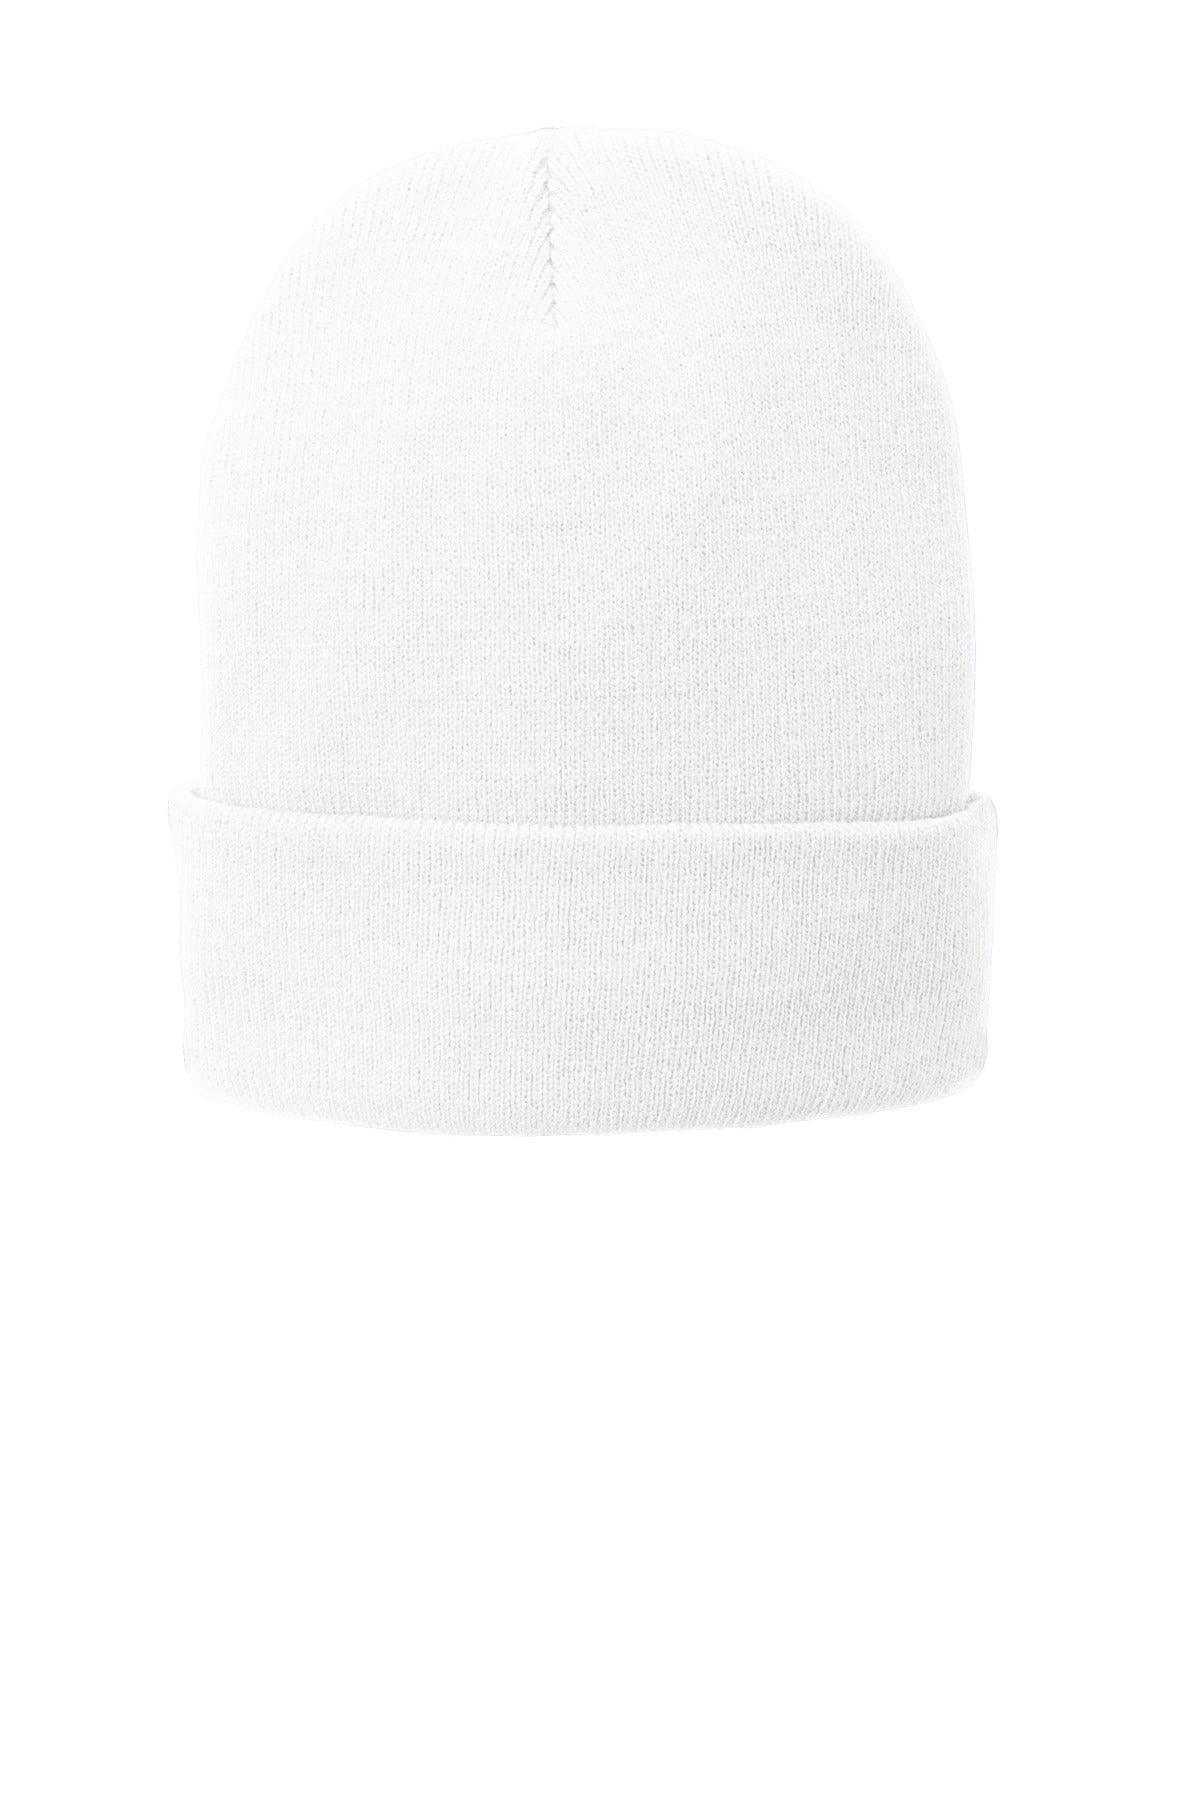 Port & Company Fleece-Lined Knit Cap. CP90L - Dresses Max